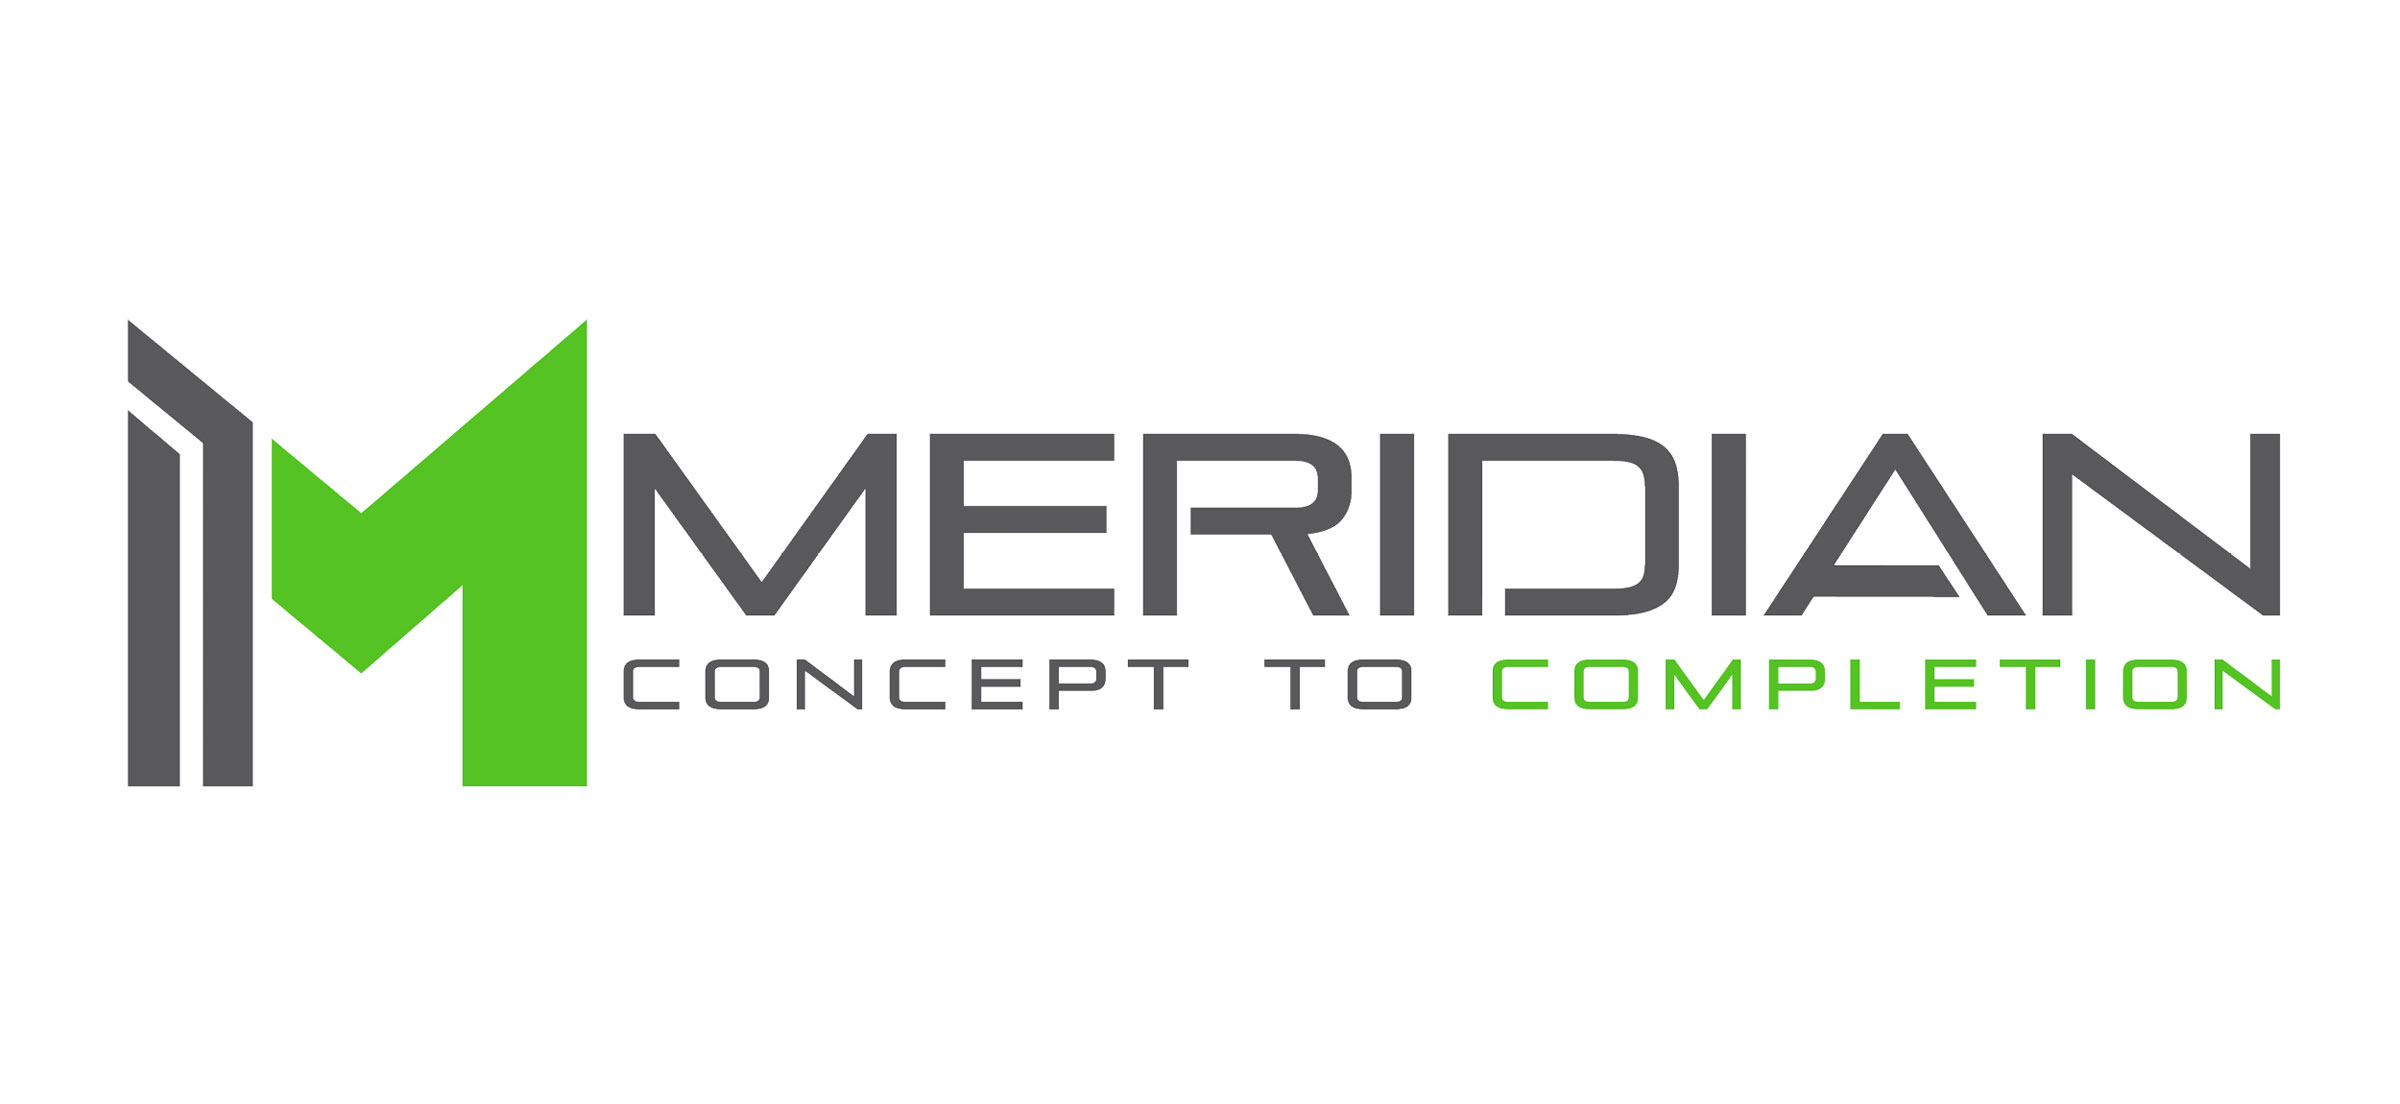 Meridian company logo.